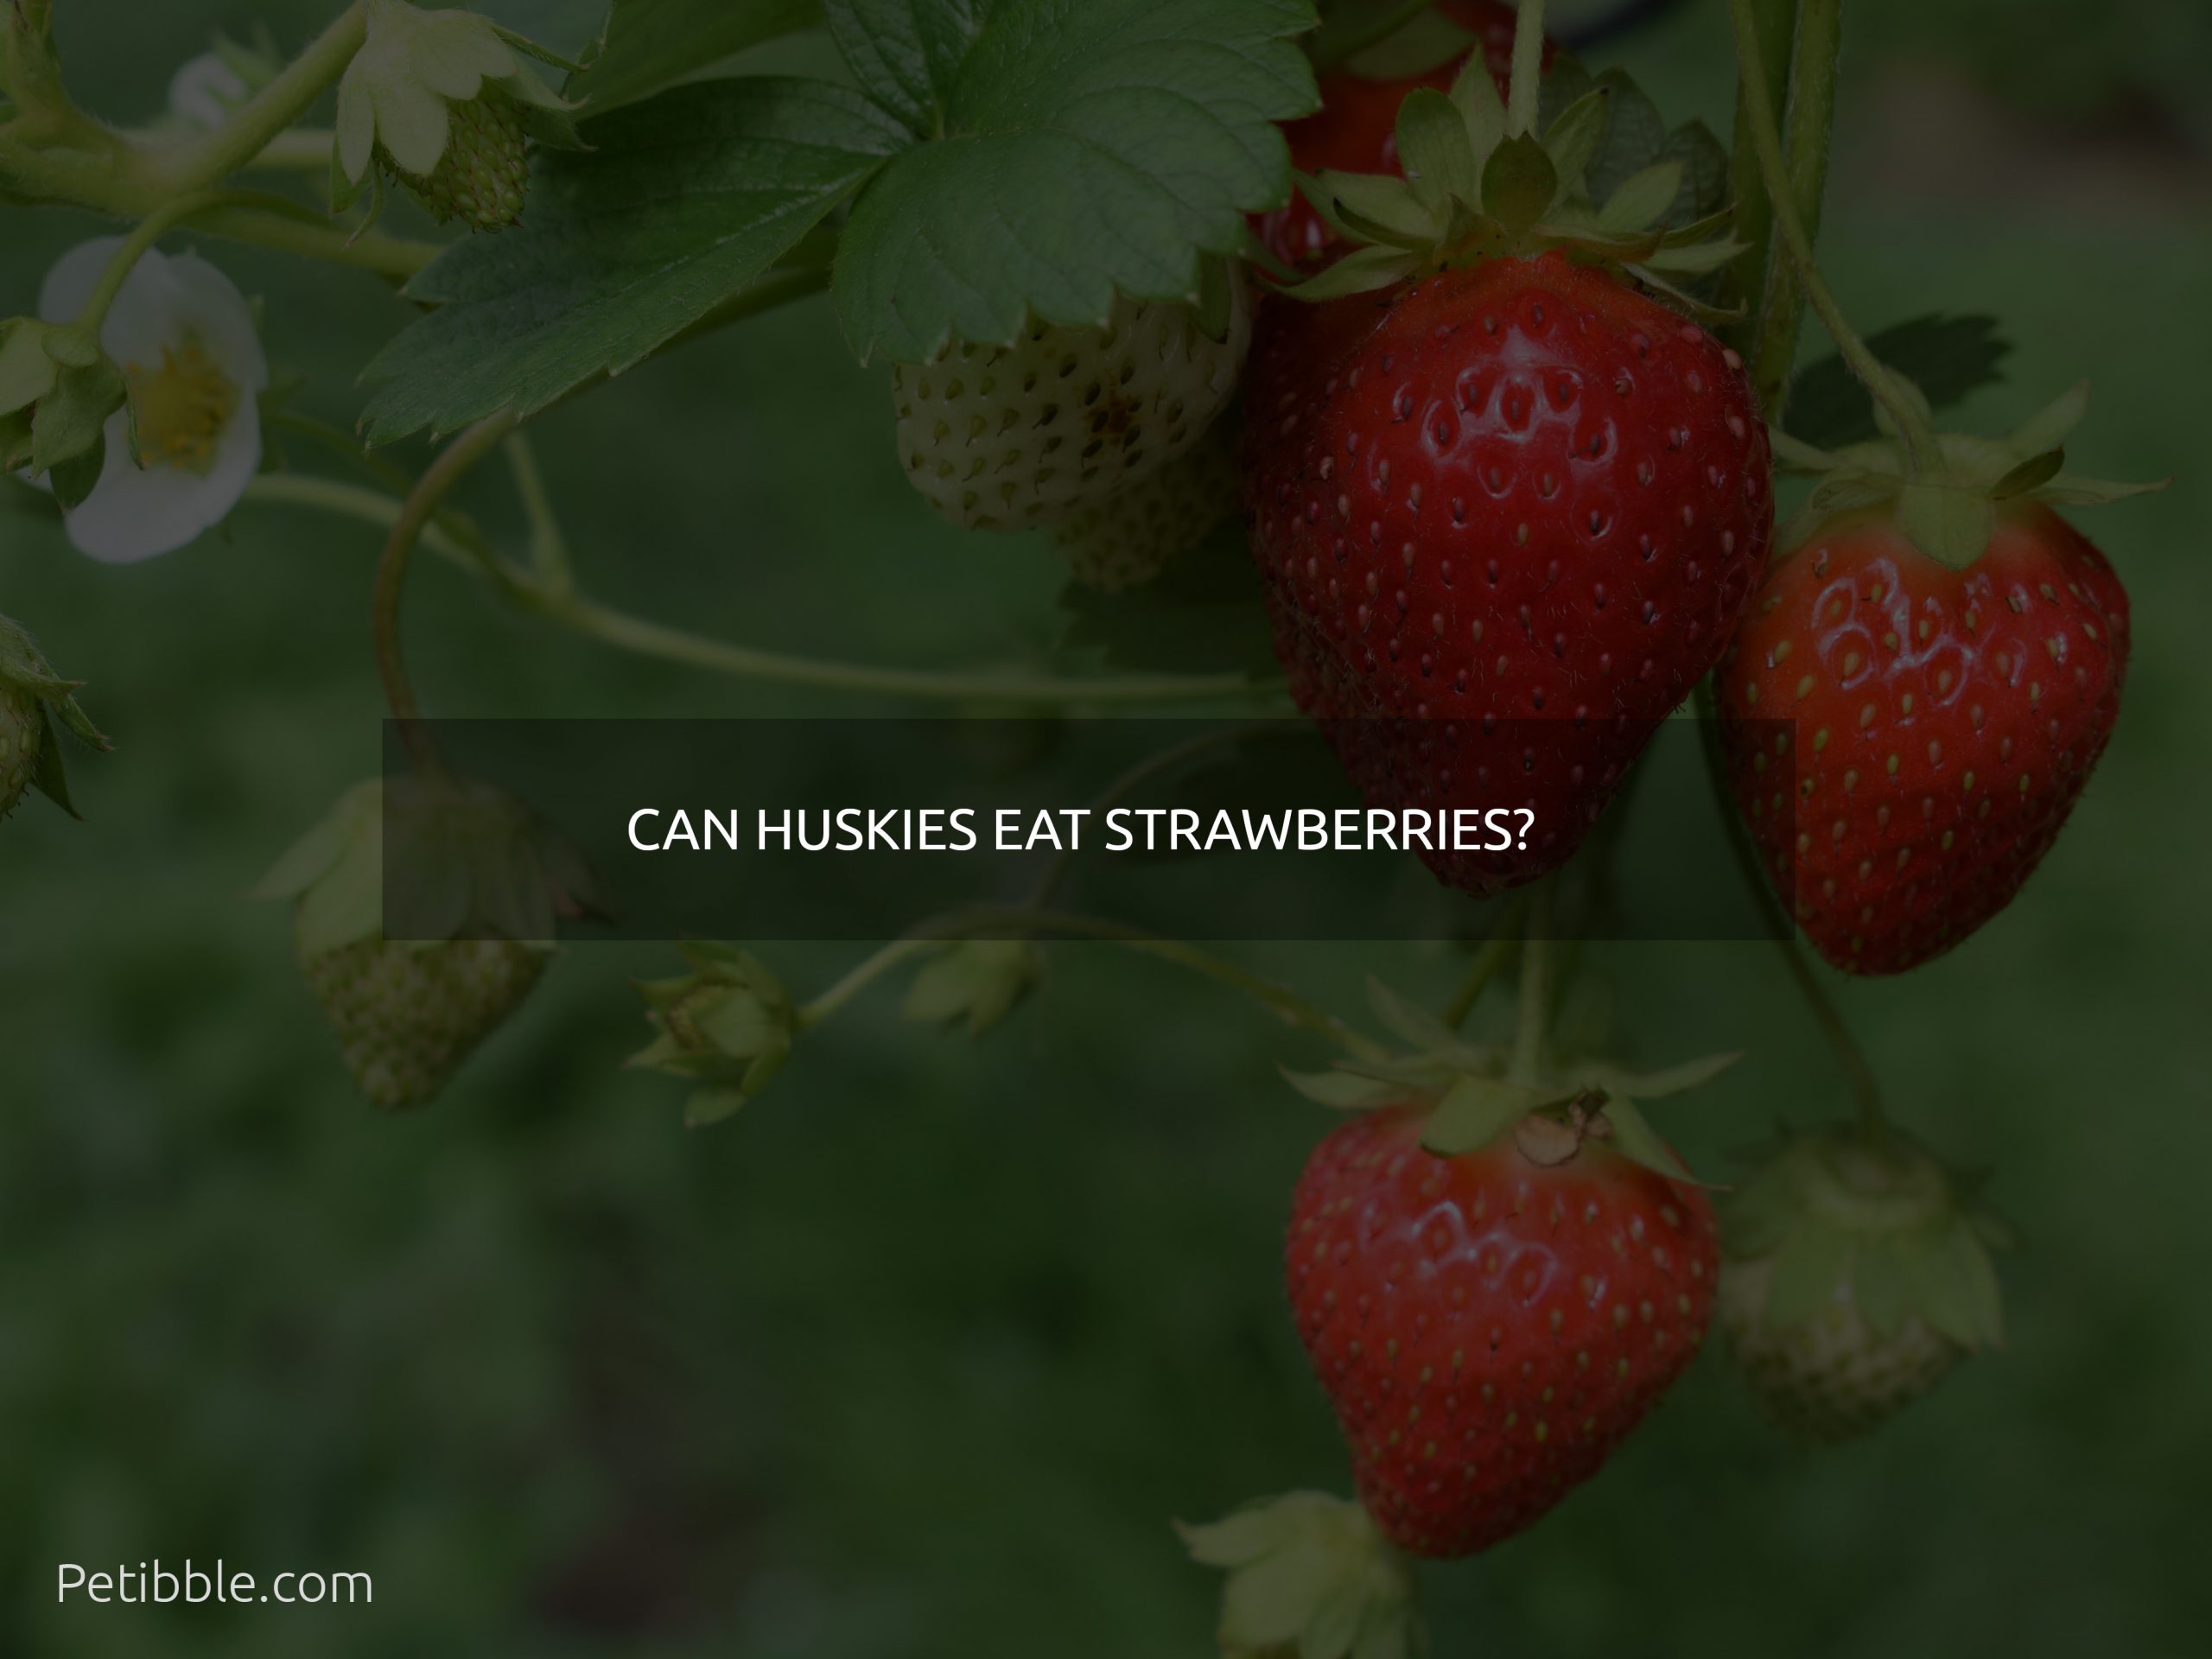 Can huskies eat strawberries?